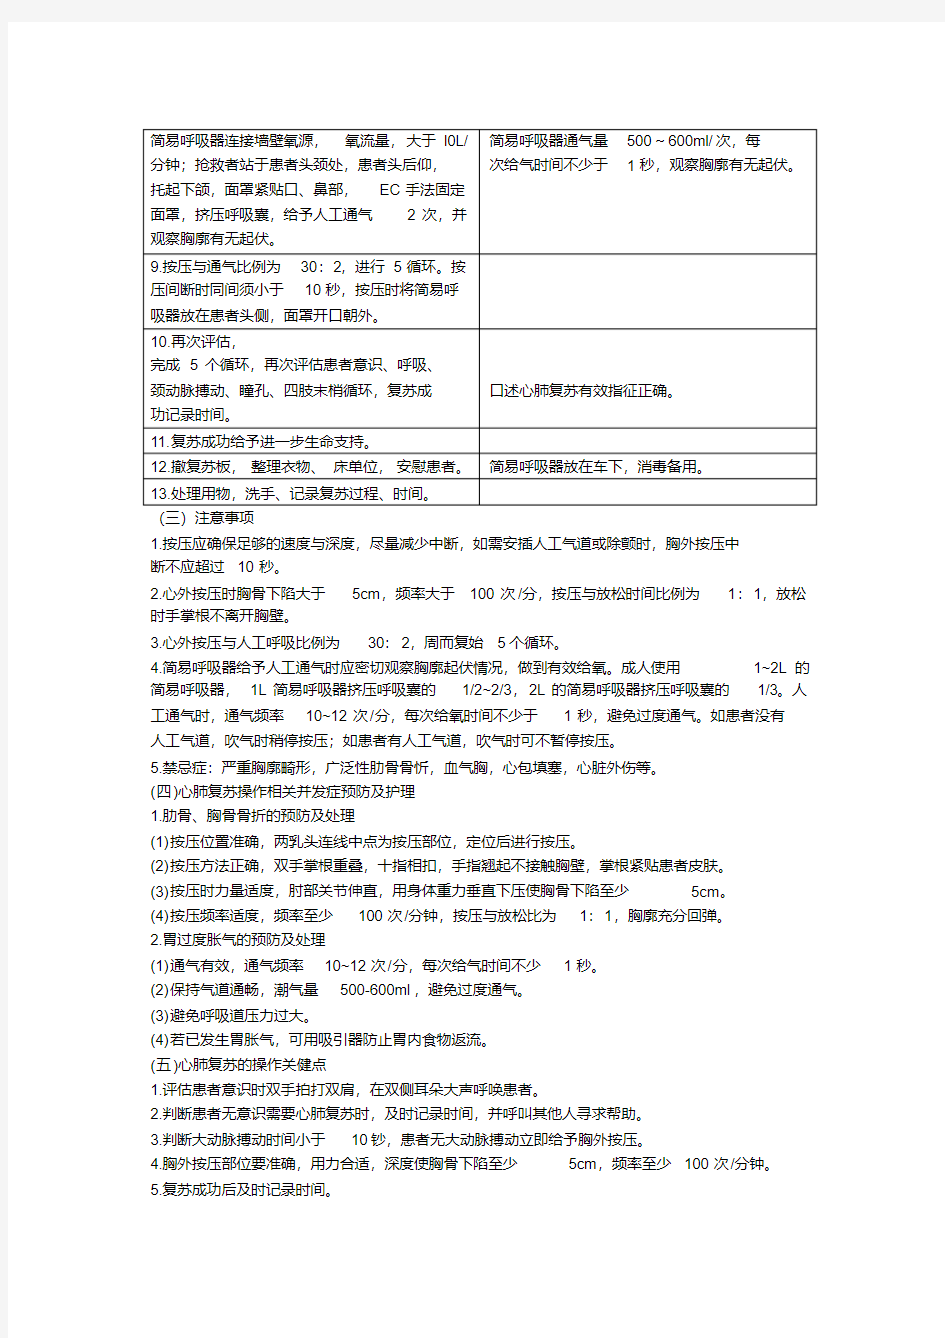 新版心肺复苏技术操作规范及评分标准.pdf